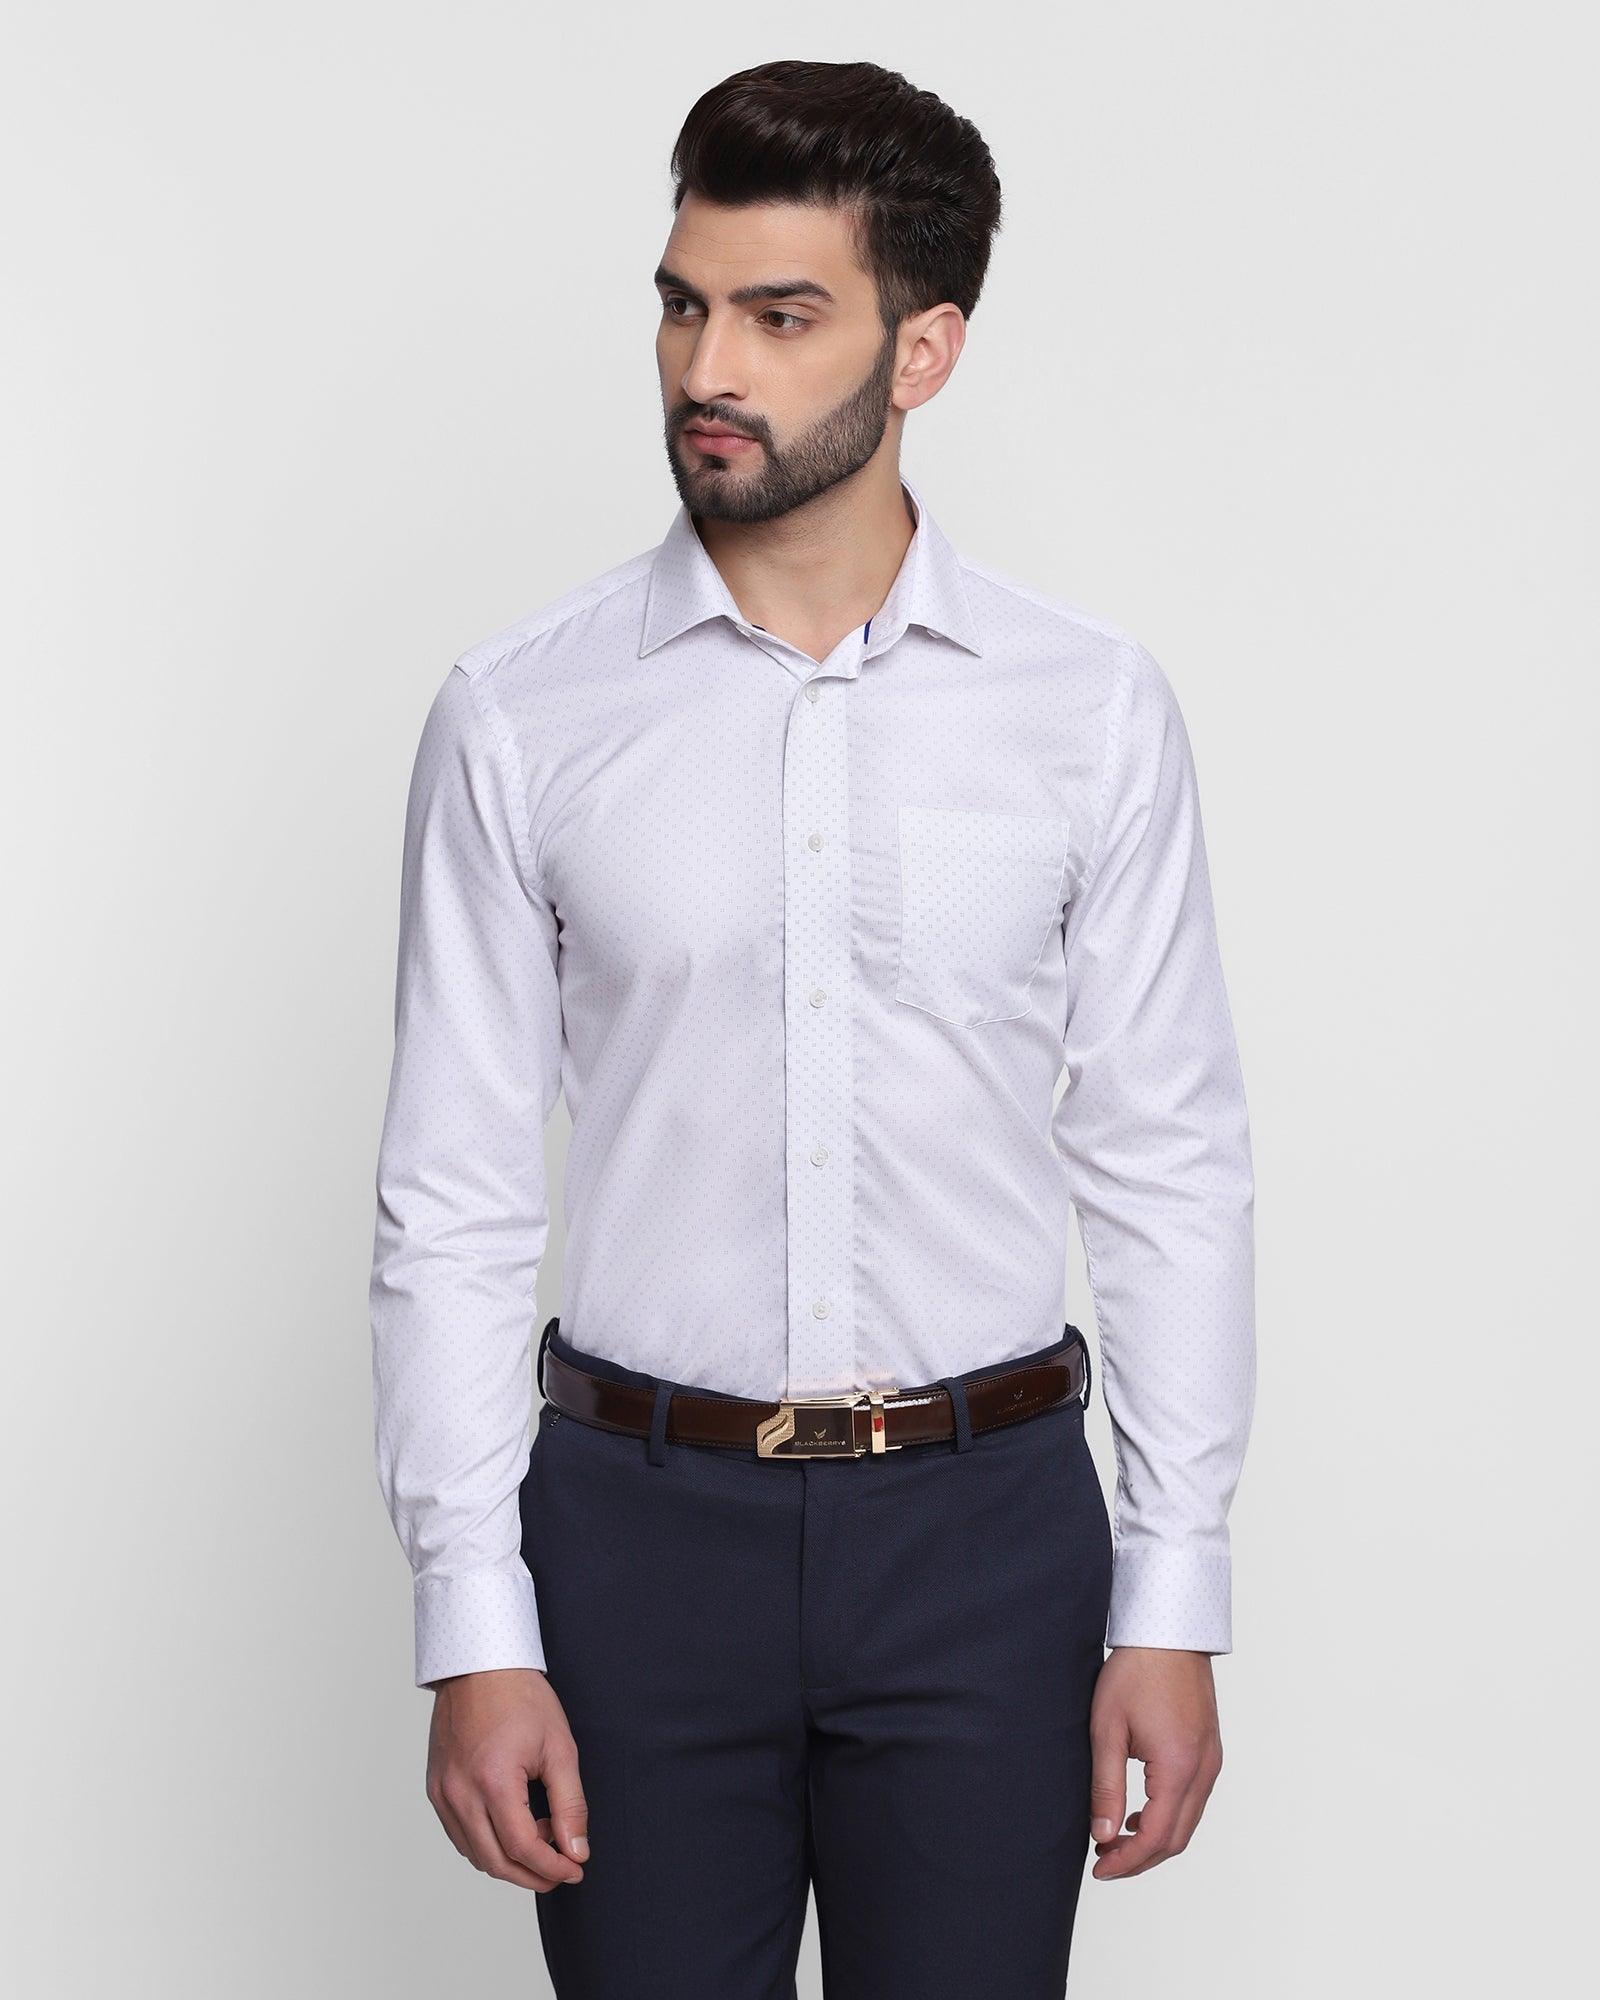 Formal White Printed Shirt - Merit